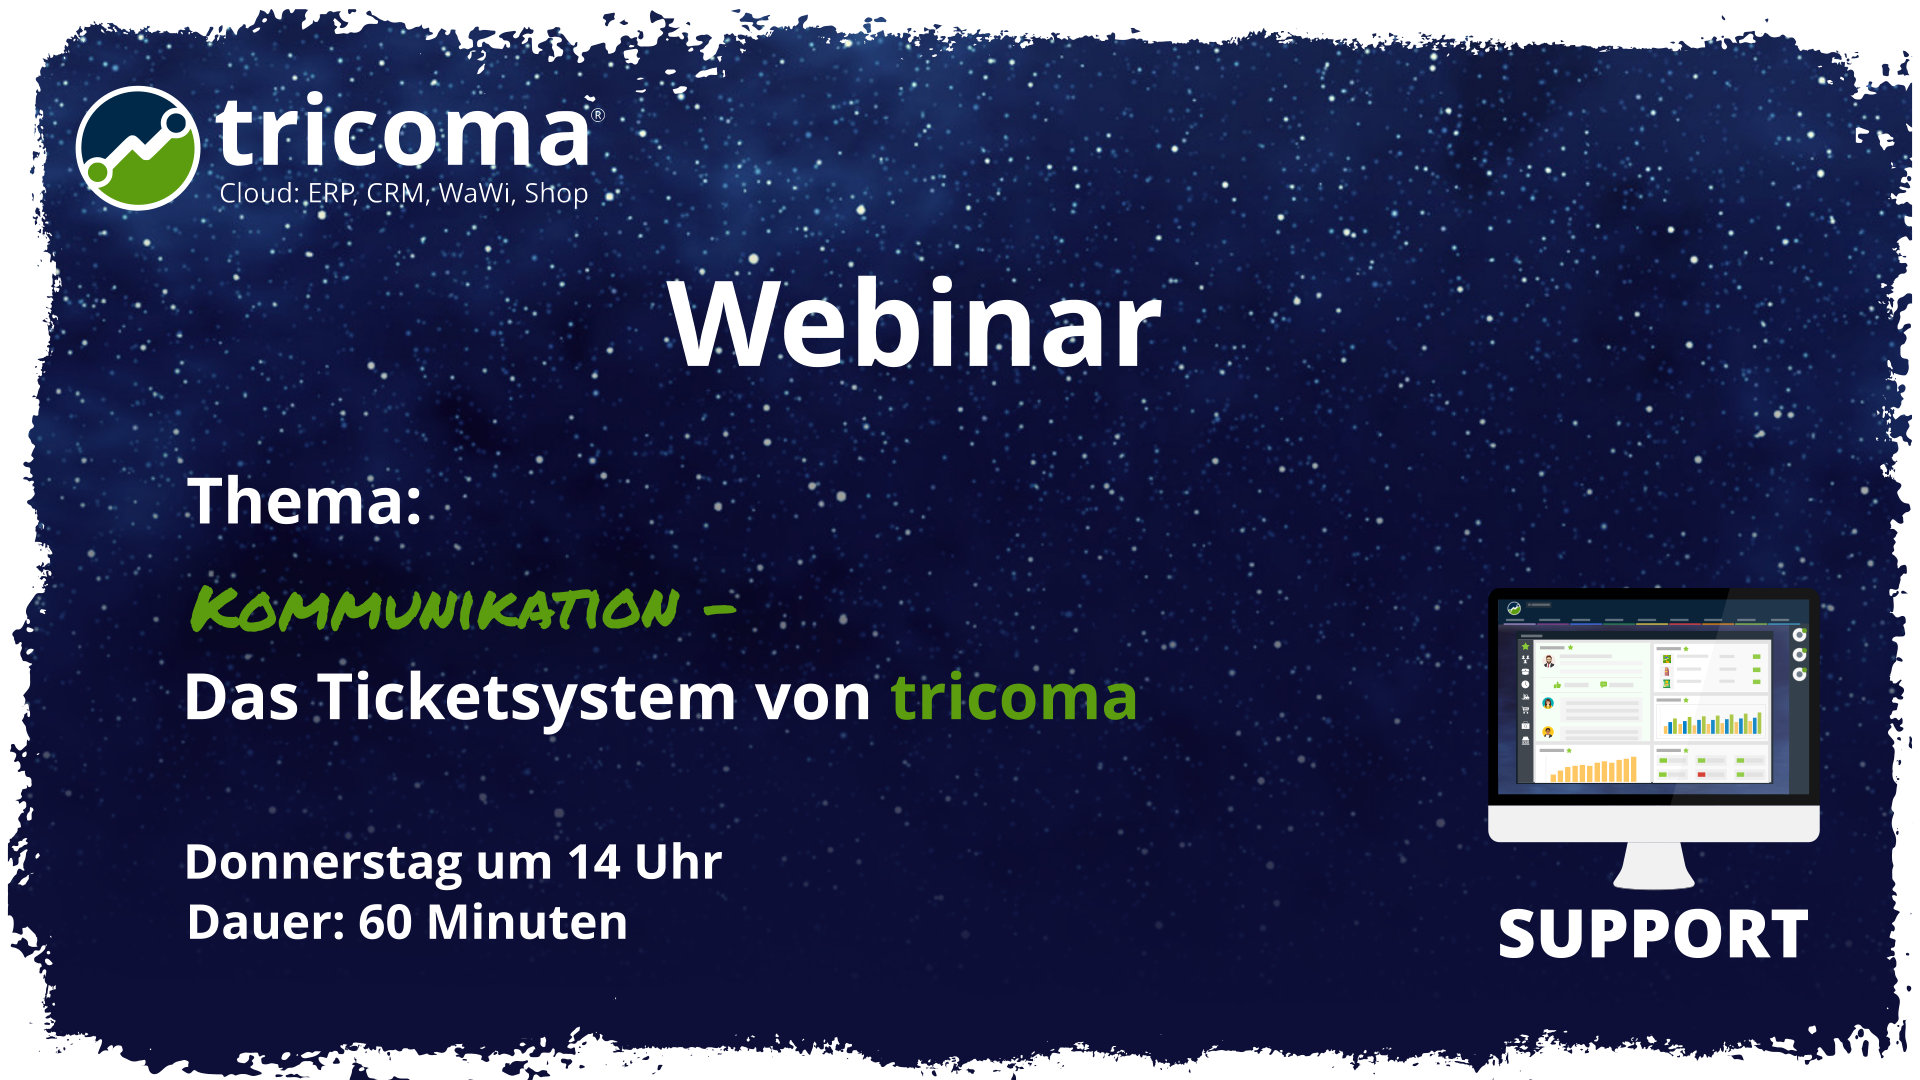 Webinar: Kommunikation - Das Ticketsystem von tricoma